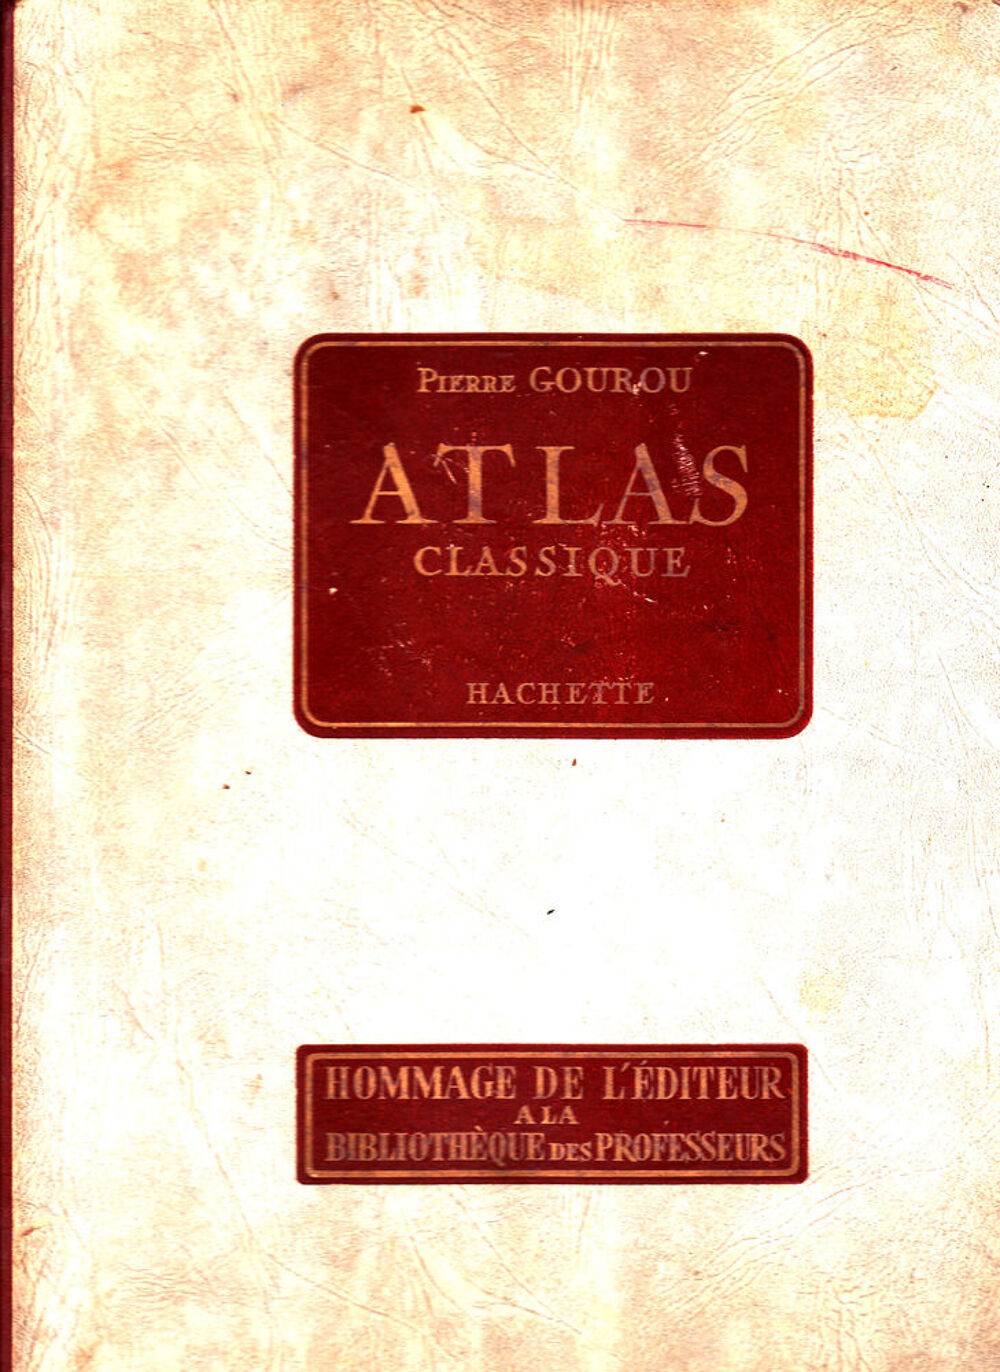 616 ATLAS CLASSIQUE PIERRE GOUROU Publi&eacute; par HACHETTE, 195 Livres et BD